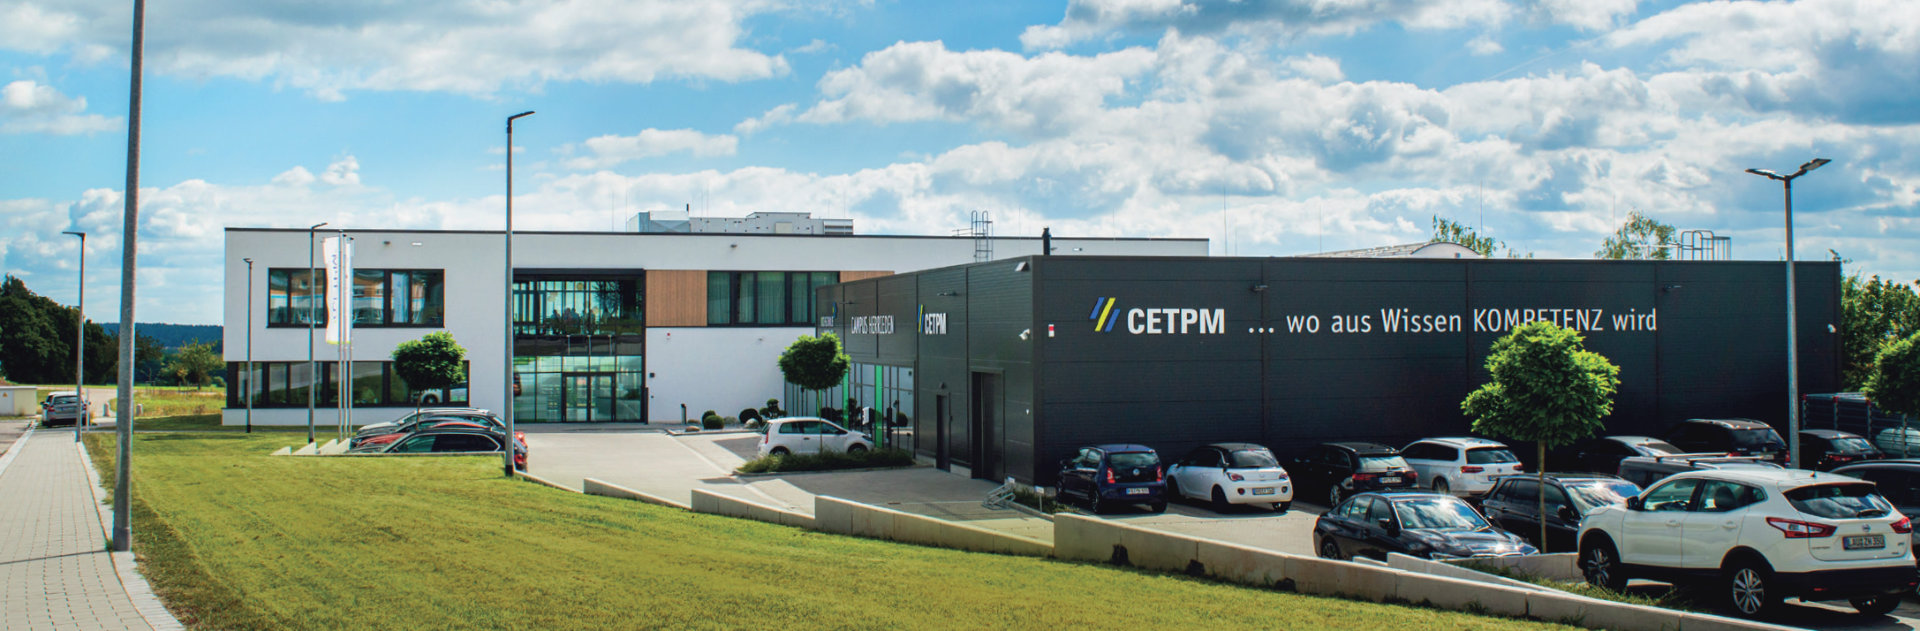 CETPM Campus